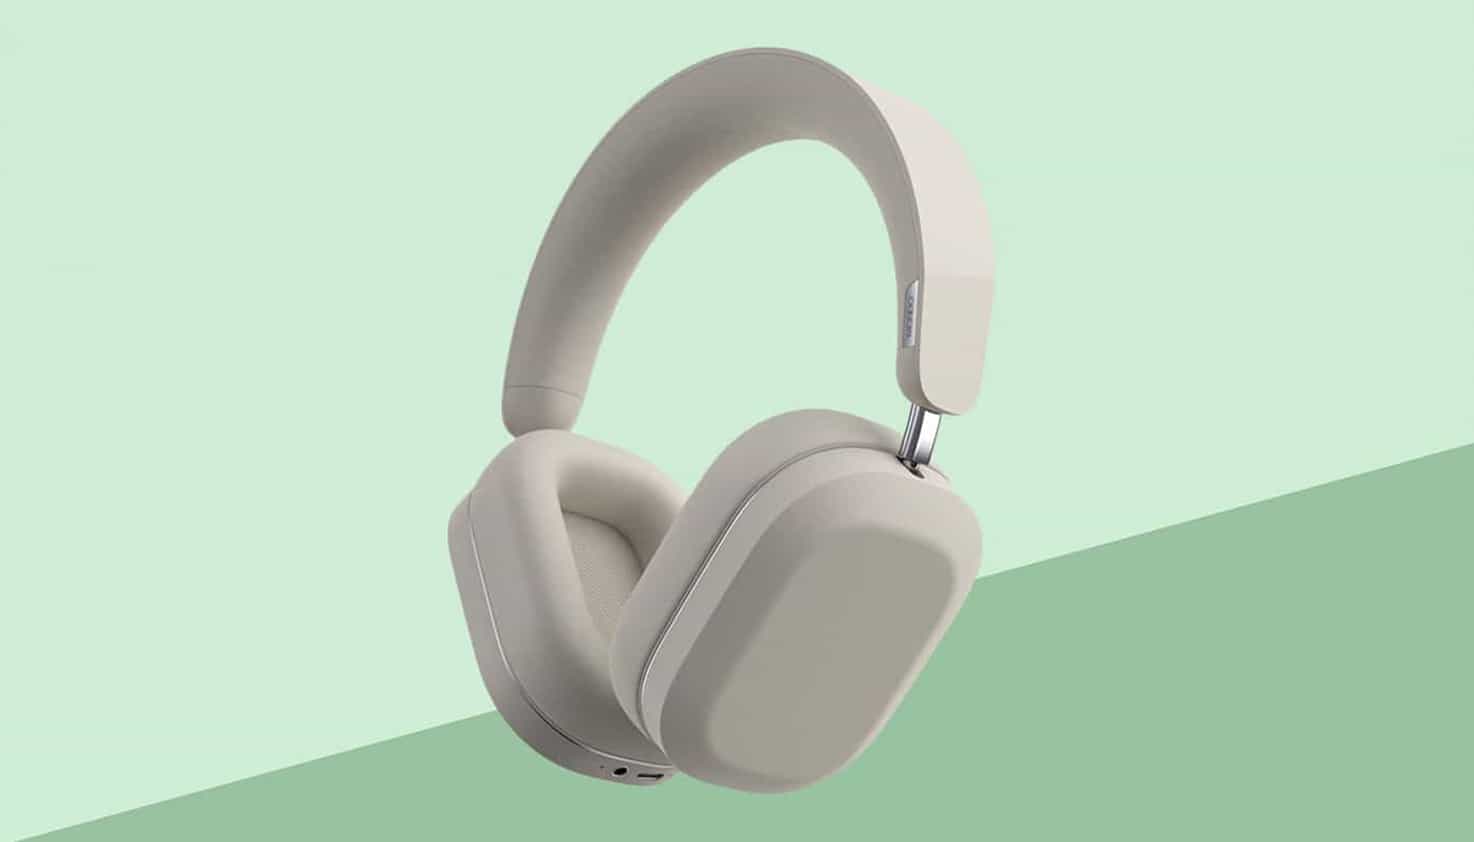 Grüner Hintergrund mit einem Design, in dem geräuschunterdrückende Kopfhörer im Mittelpunkt stehen.